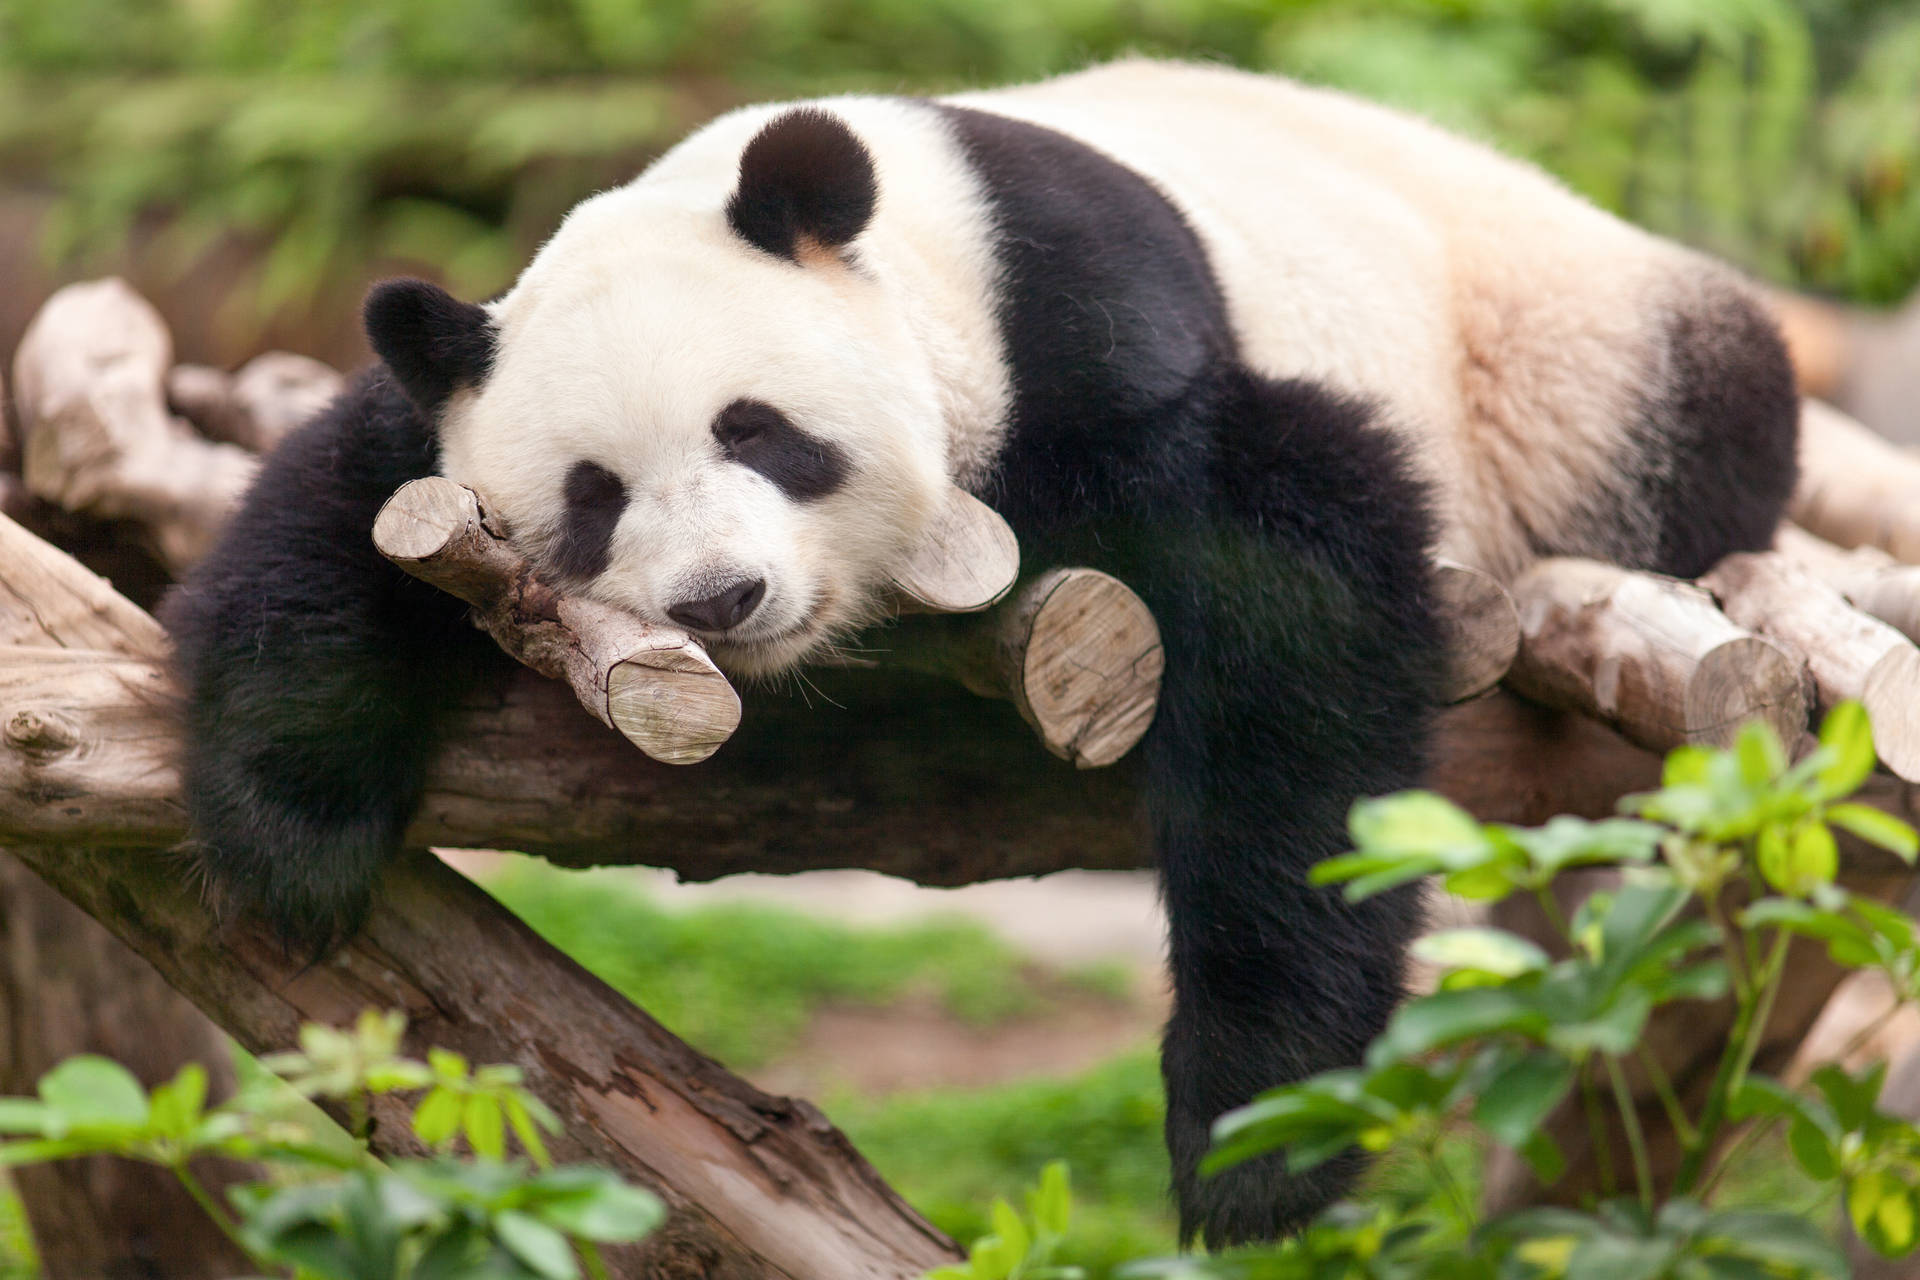 Cute Panda Lazily Sleeping